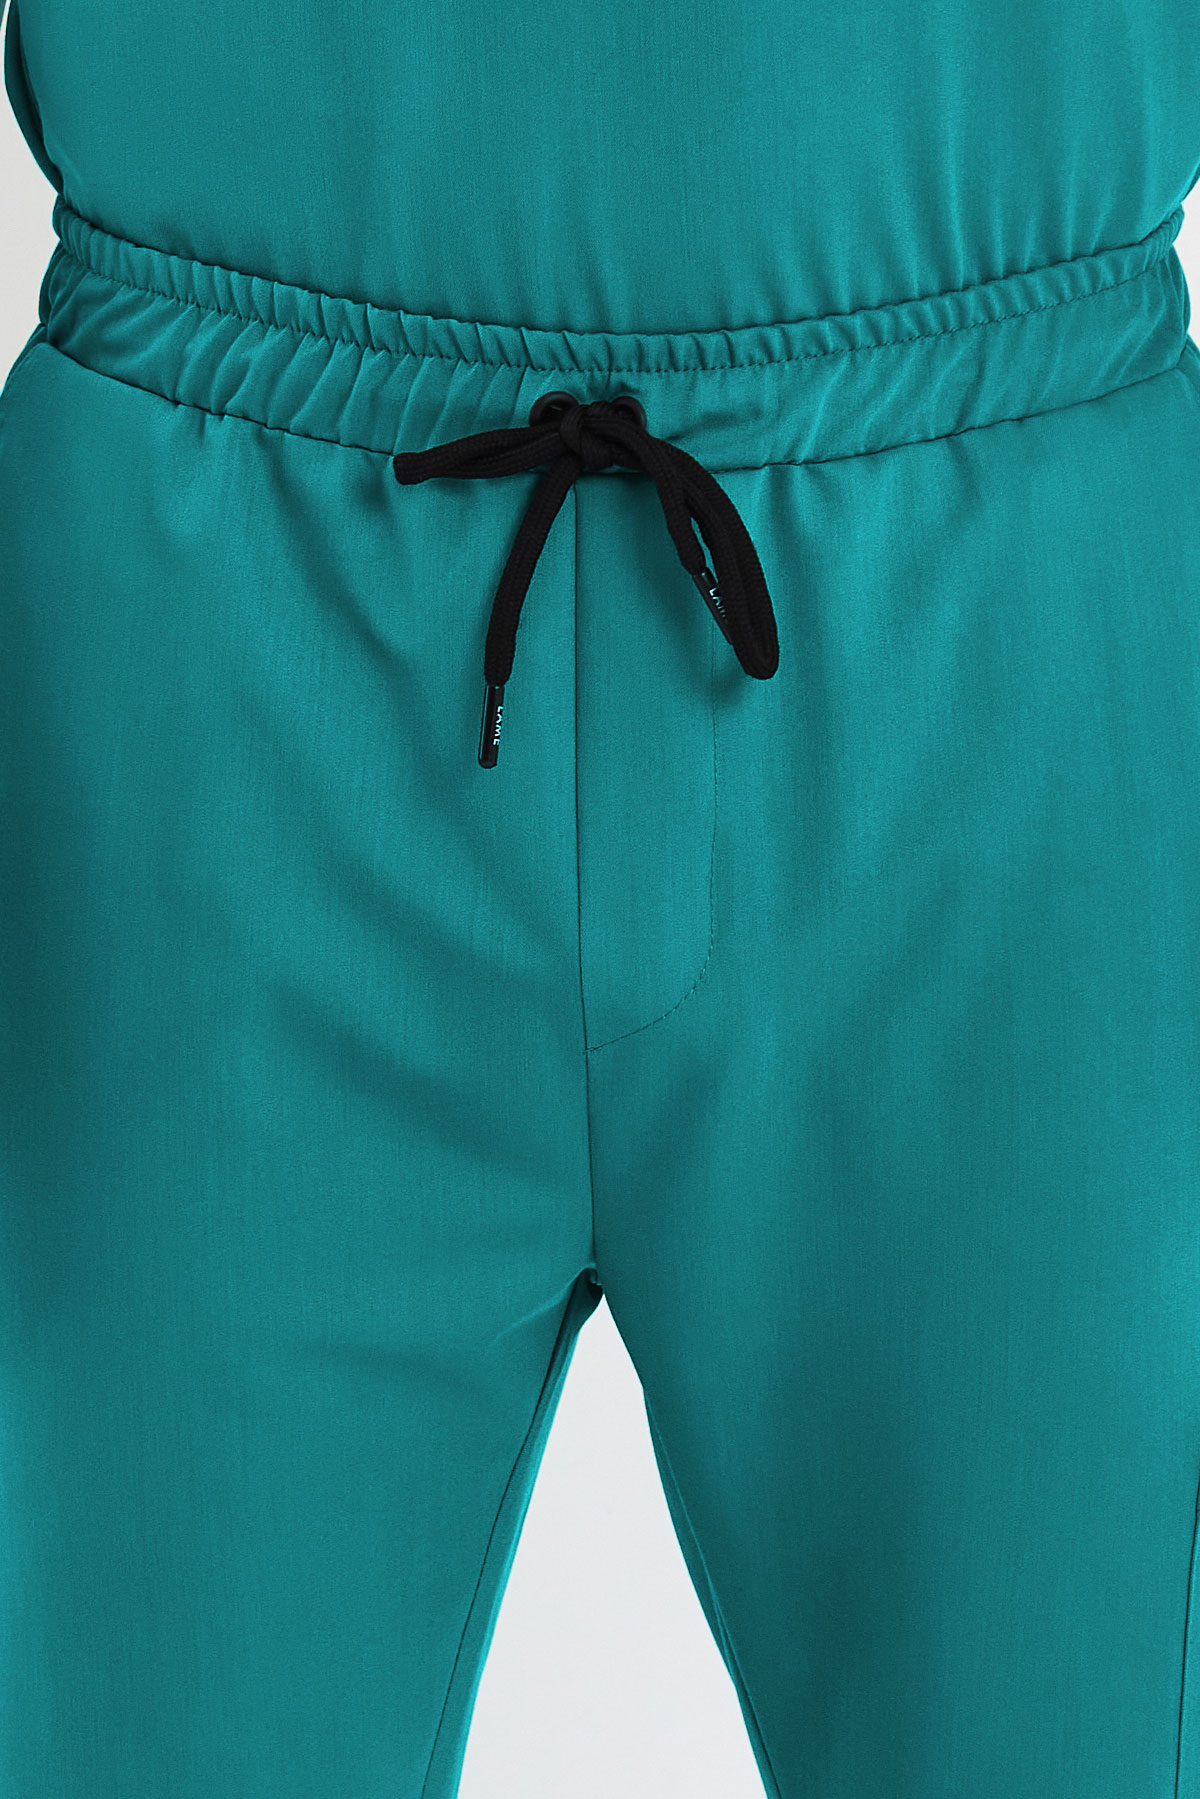 3004 Luxury Cerrahi Yeşil Pantolon